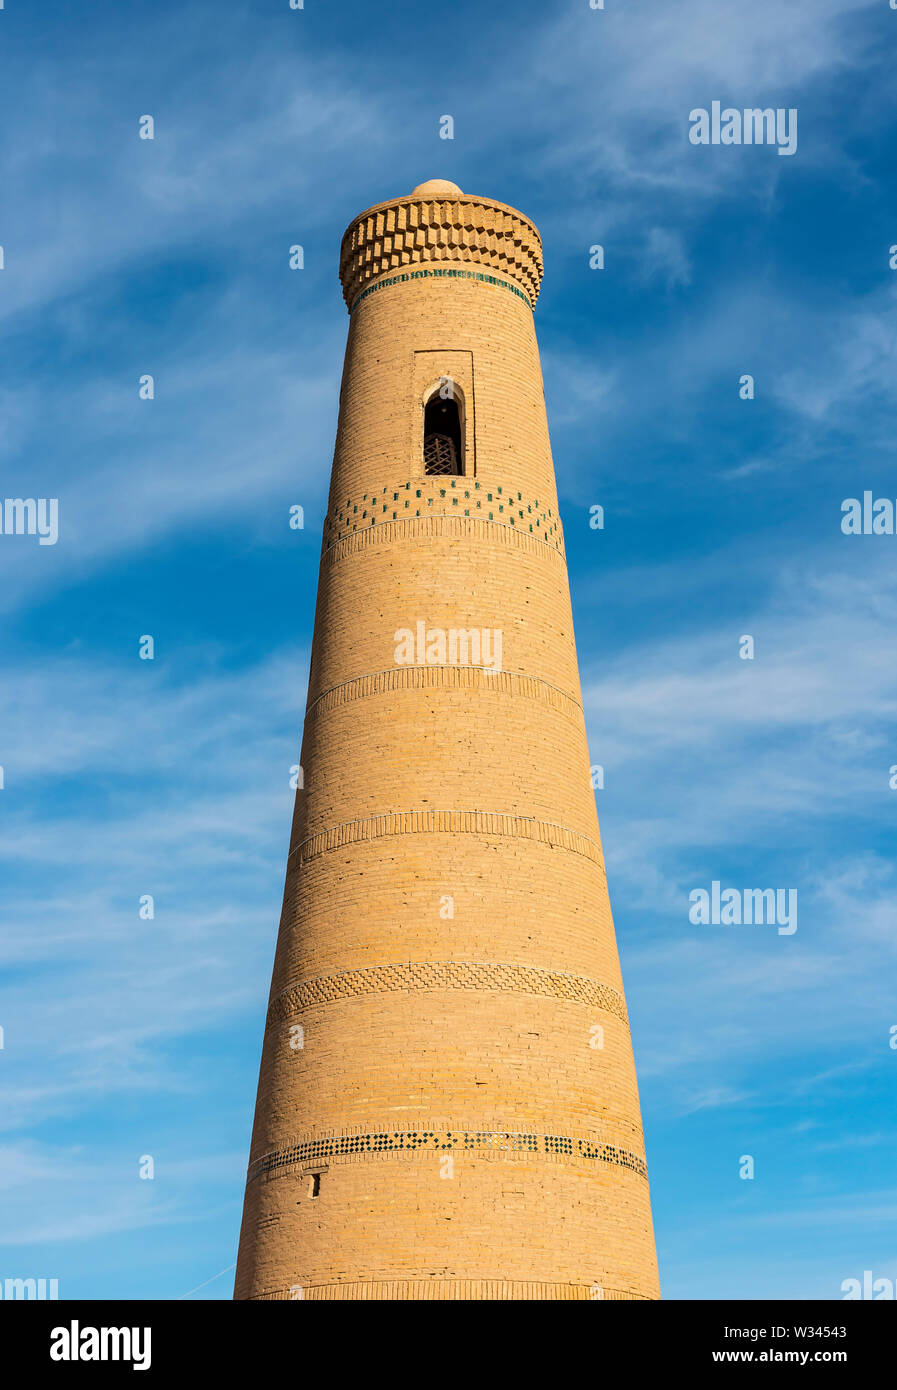 Minaret of Bikajon Bika Mosque, Khiva, Uzbekistan Stock Photo